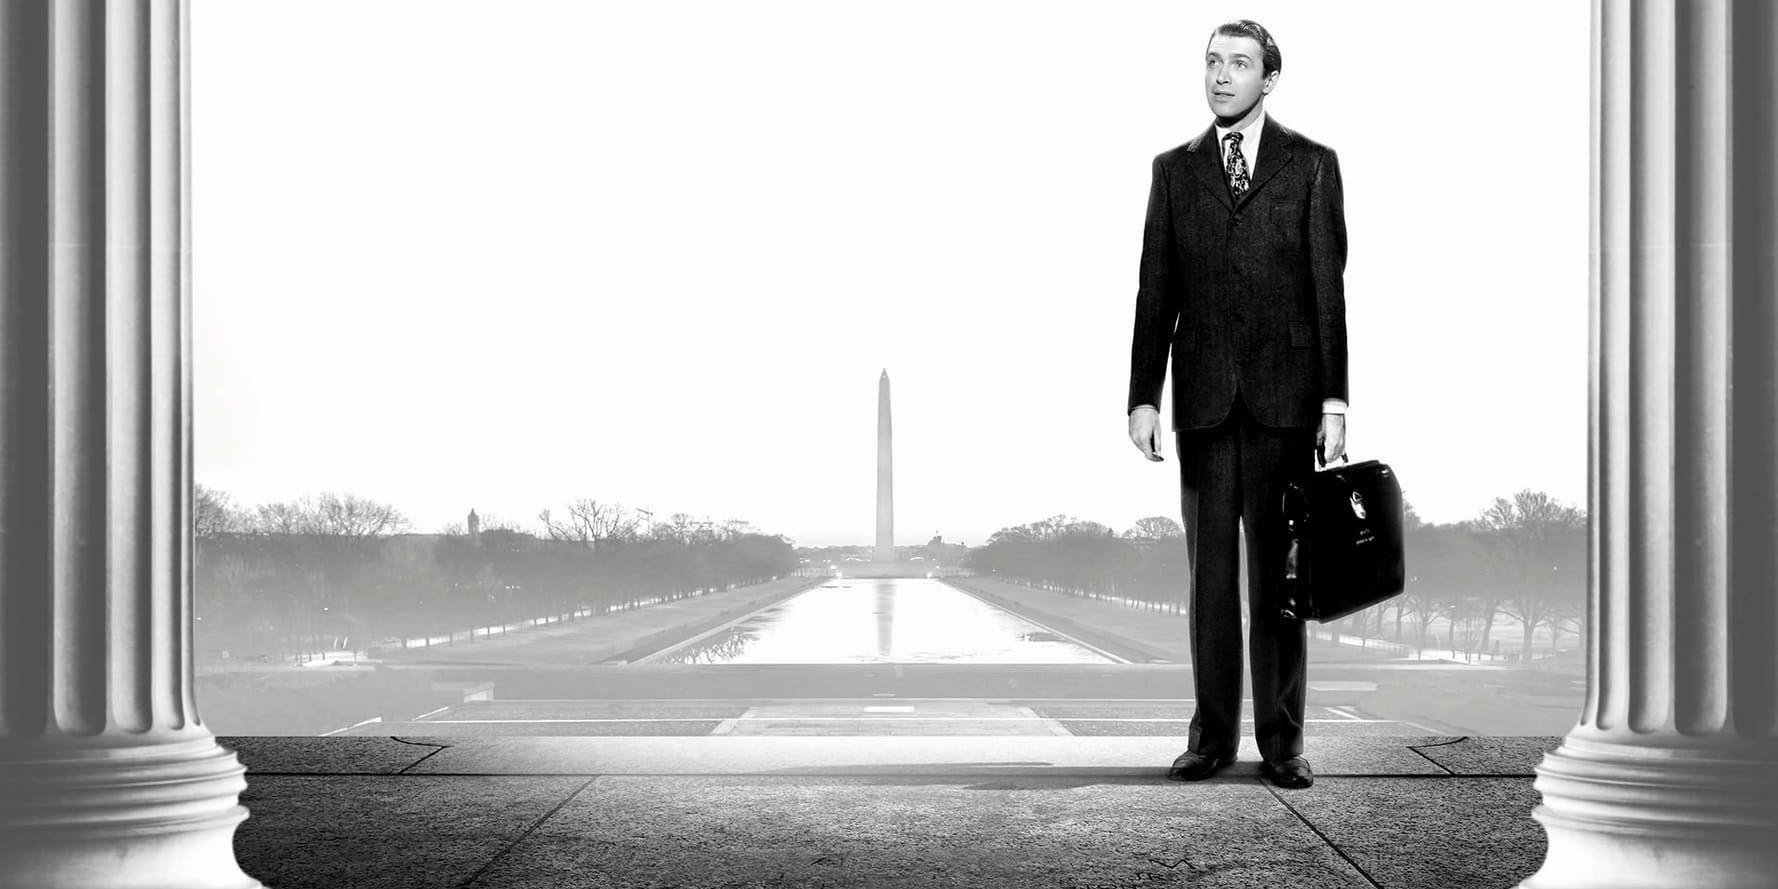 1939. Då, i filmens värld, var det James Stewart i rollen som Mr Smith som for till Washington för att försvara de amerikanska färgerna och vara ett föredöme i världen för demokrati. Trump slip-streamar gärna efter Capras populistiska hjältar, men svävar på målet, skriver Ulrika Knutson.